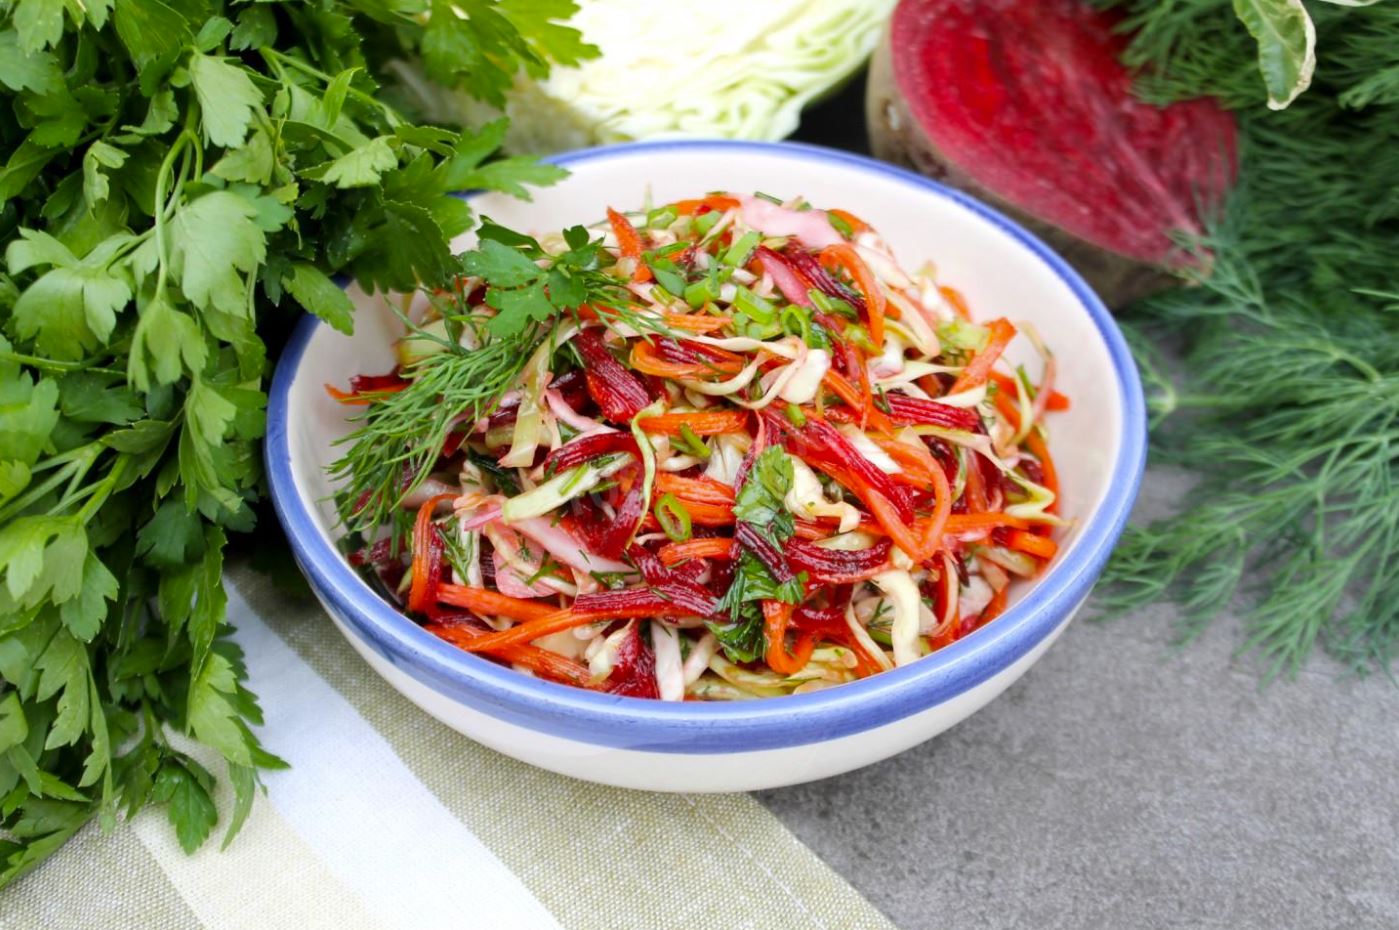 ochishhajushhij-salat-s-listjami-salata